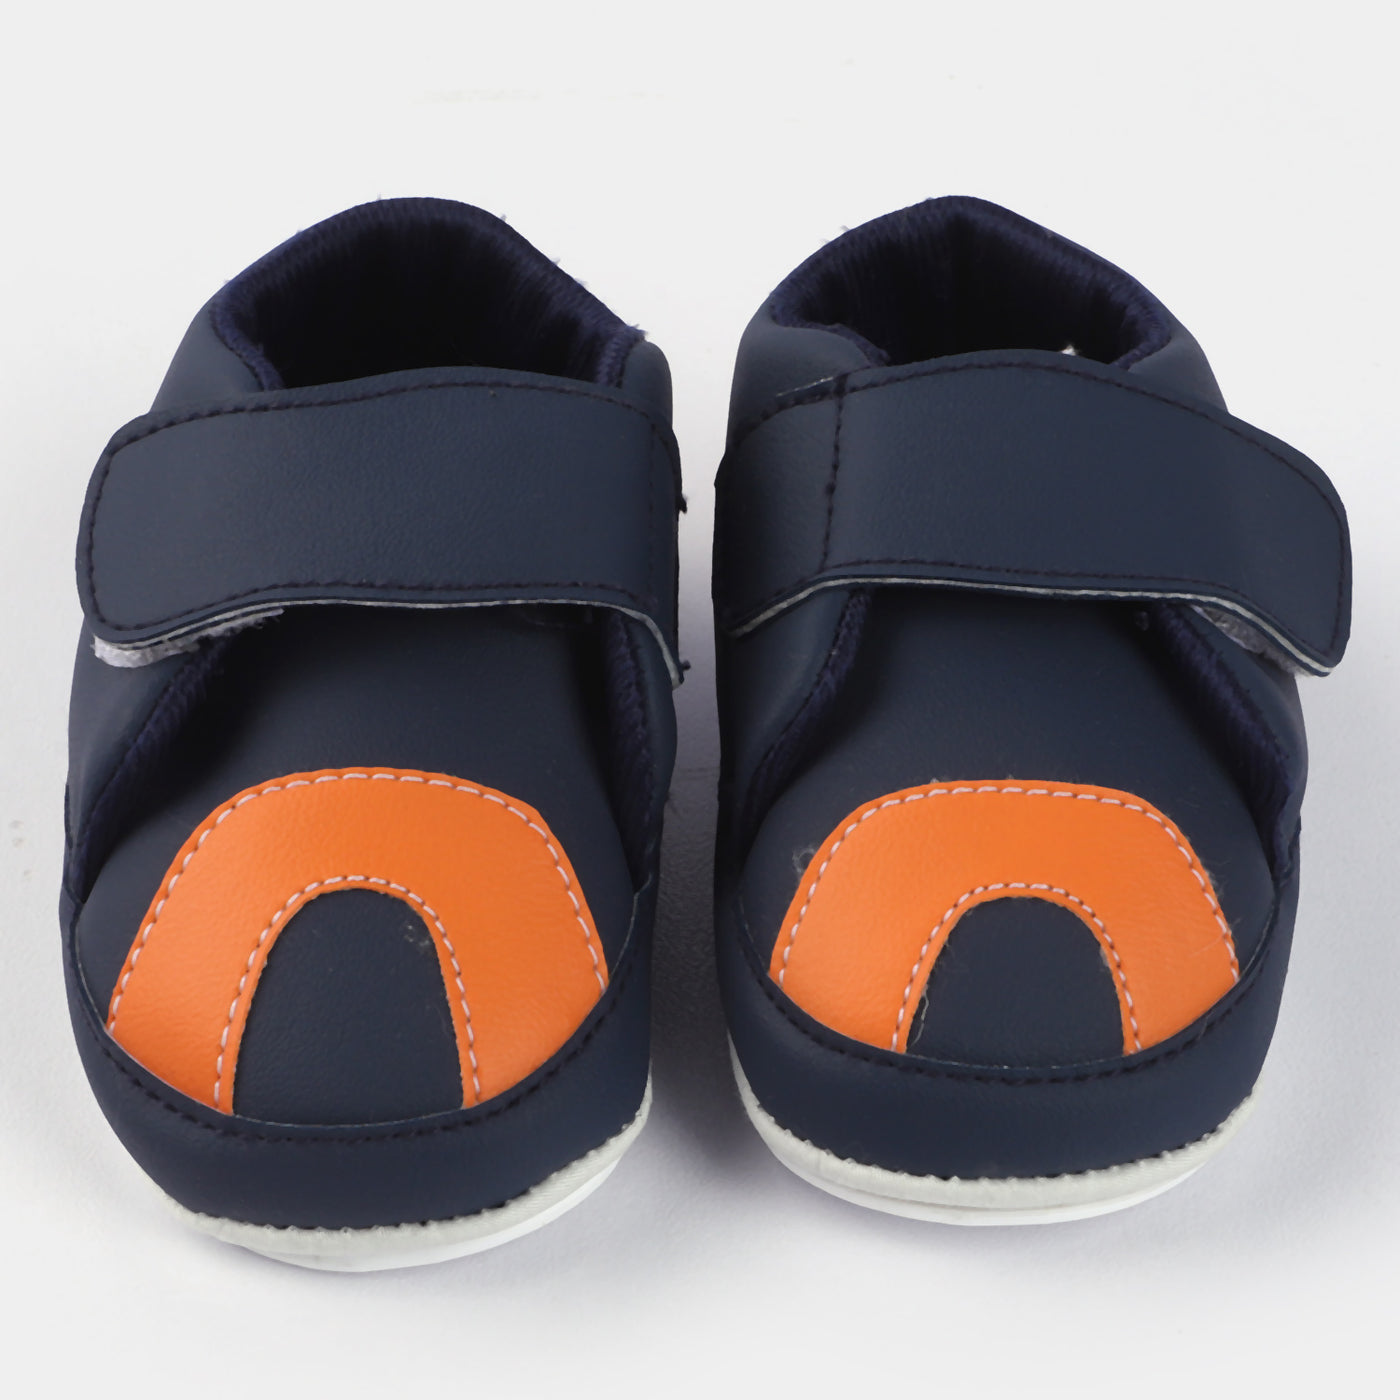 Baby Boys Shoes 1908-Blue/Orange